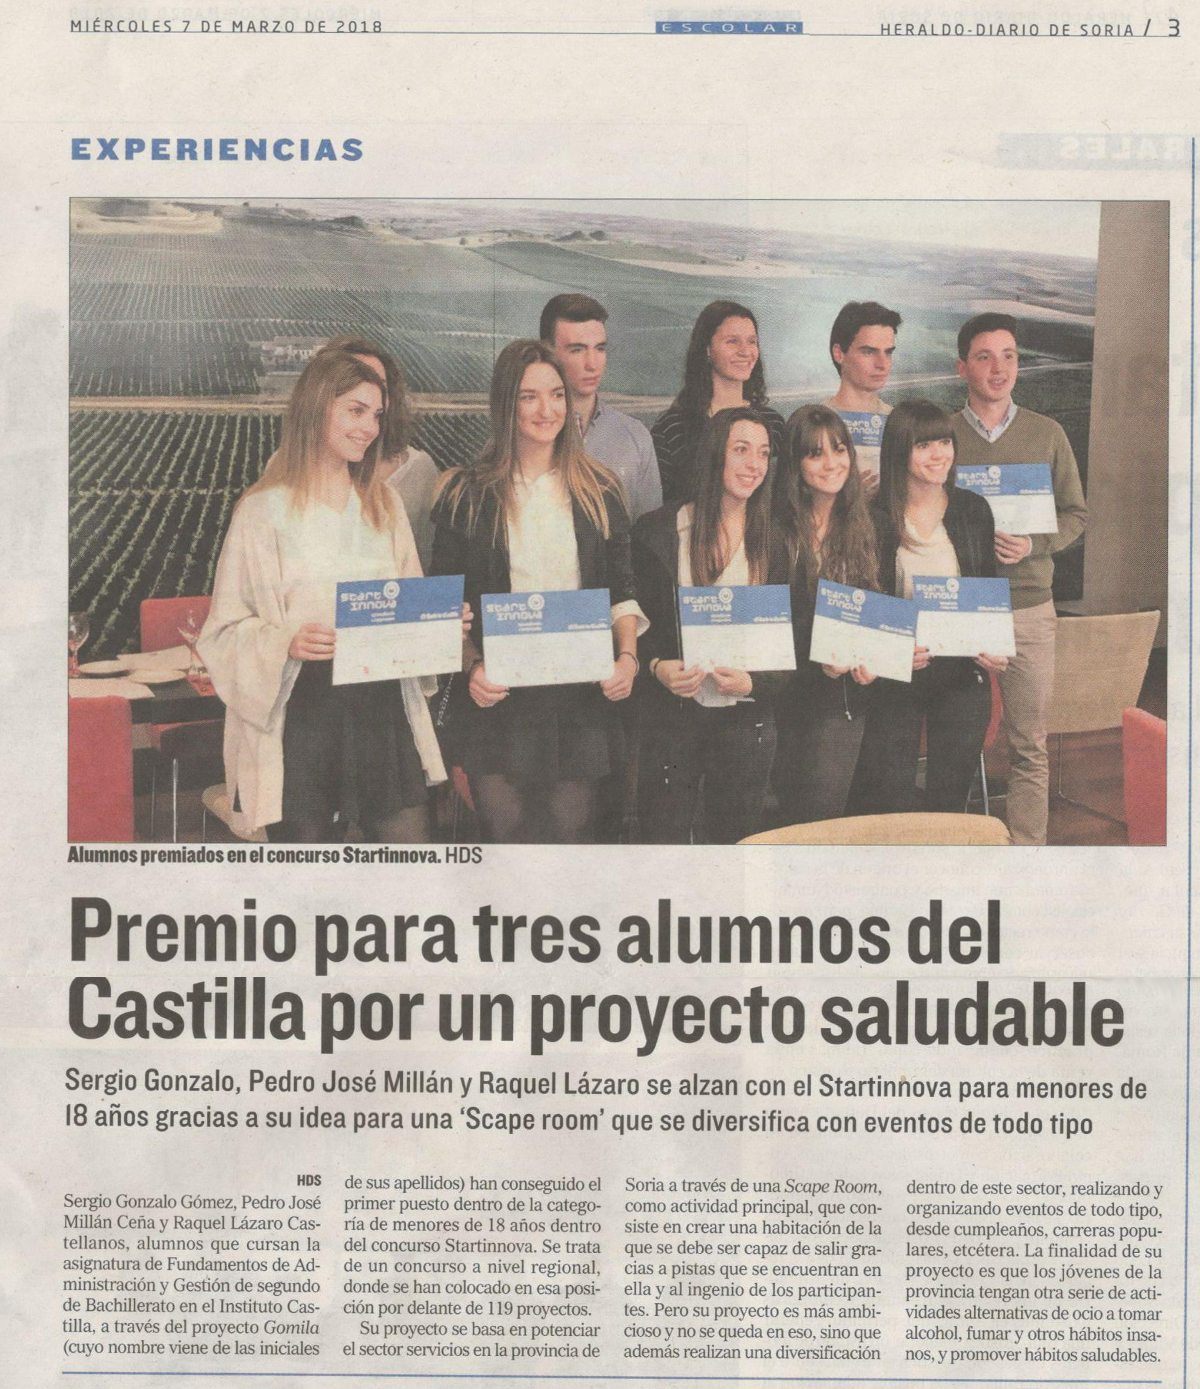 2018-03-07 Proyecto GoMiLa. Artículo Heraldo-Diario de Soria